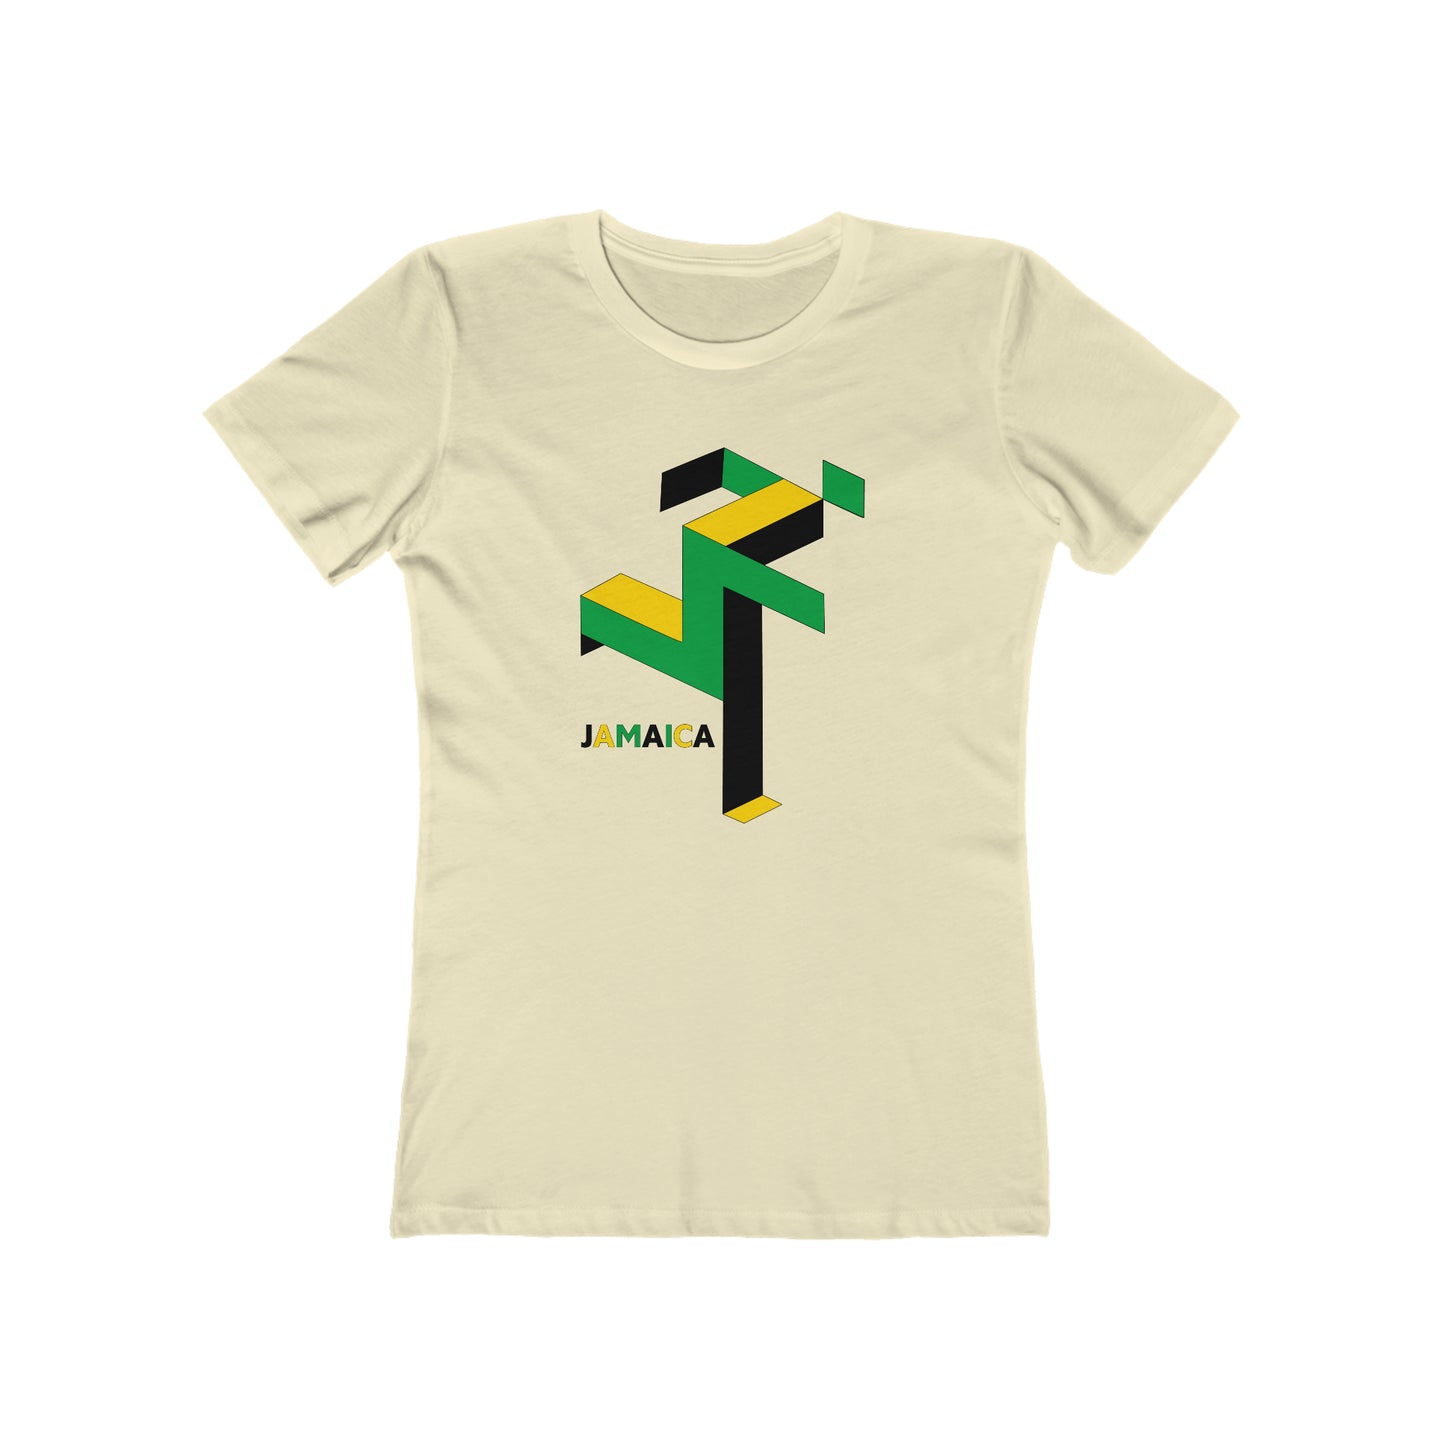 Jamaican Runner - Women's T-Shirt